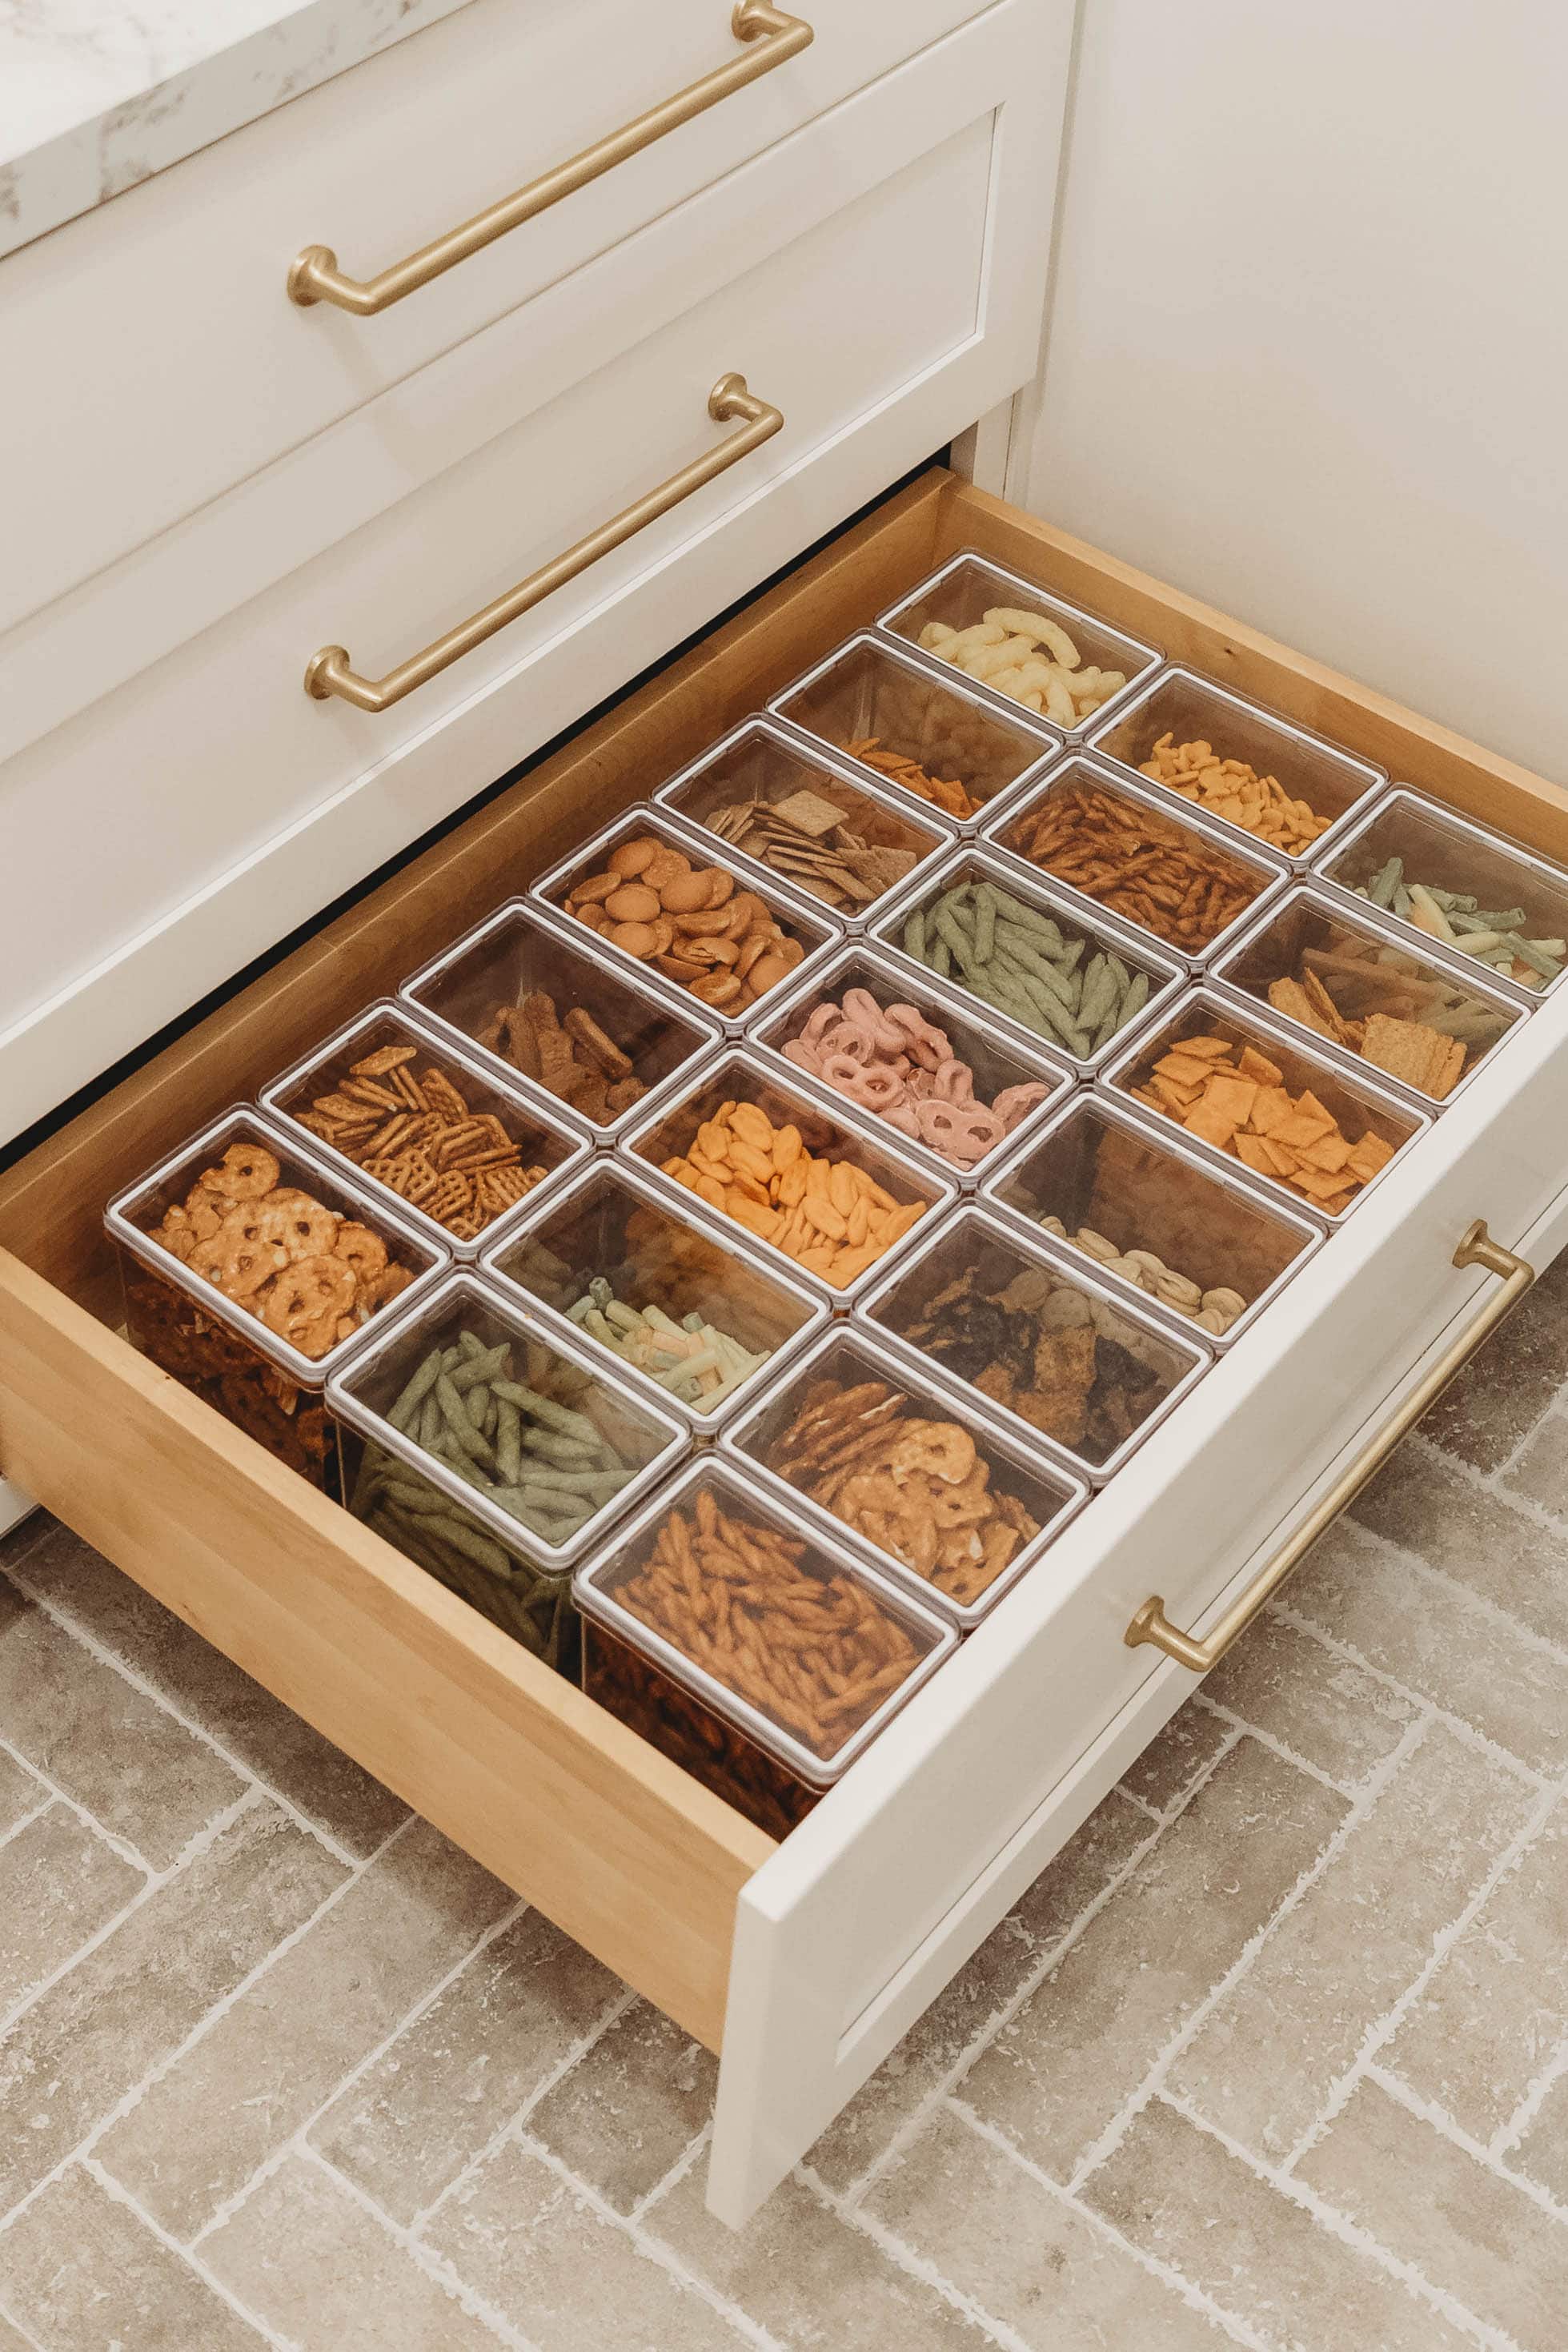 Bottom pantry drawer